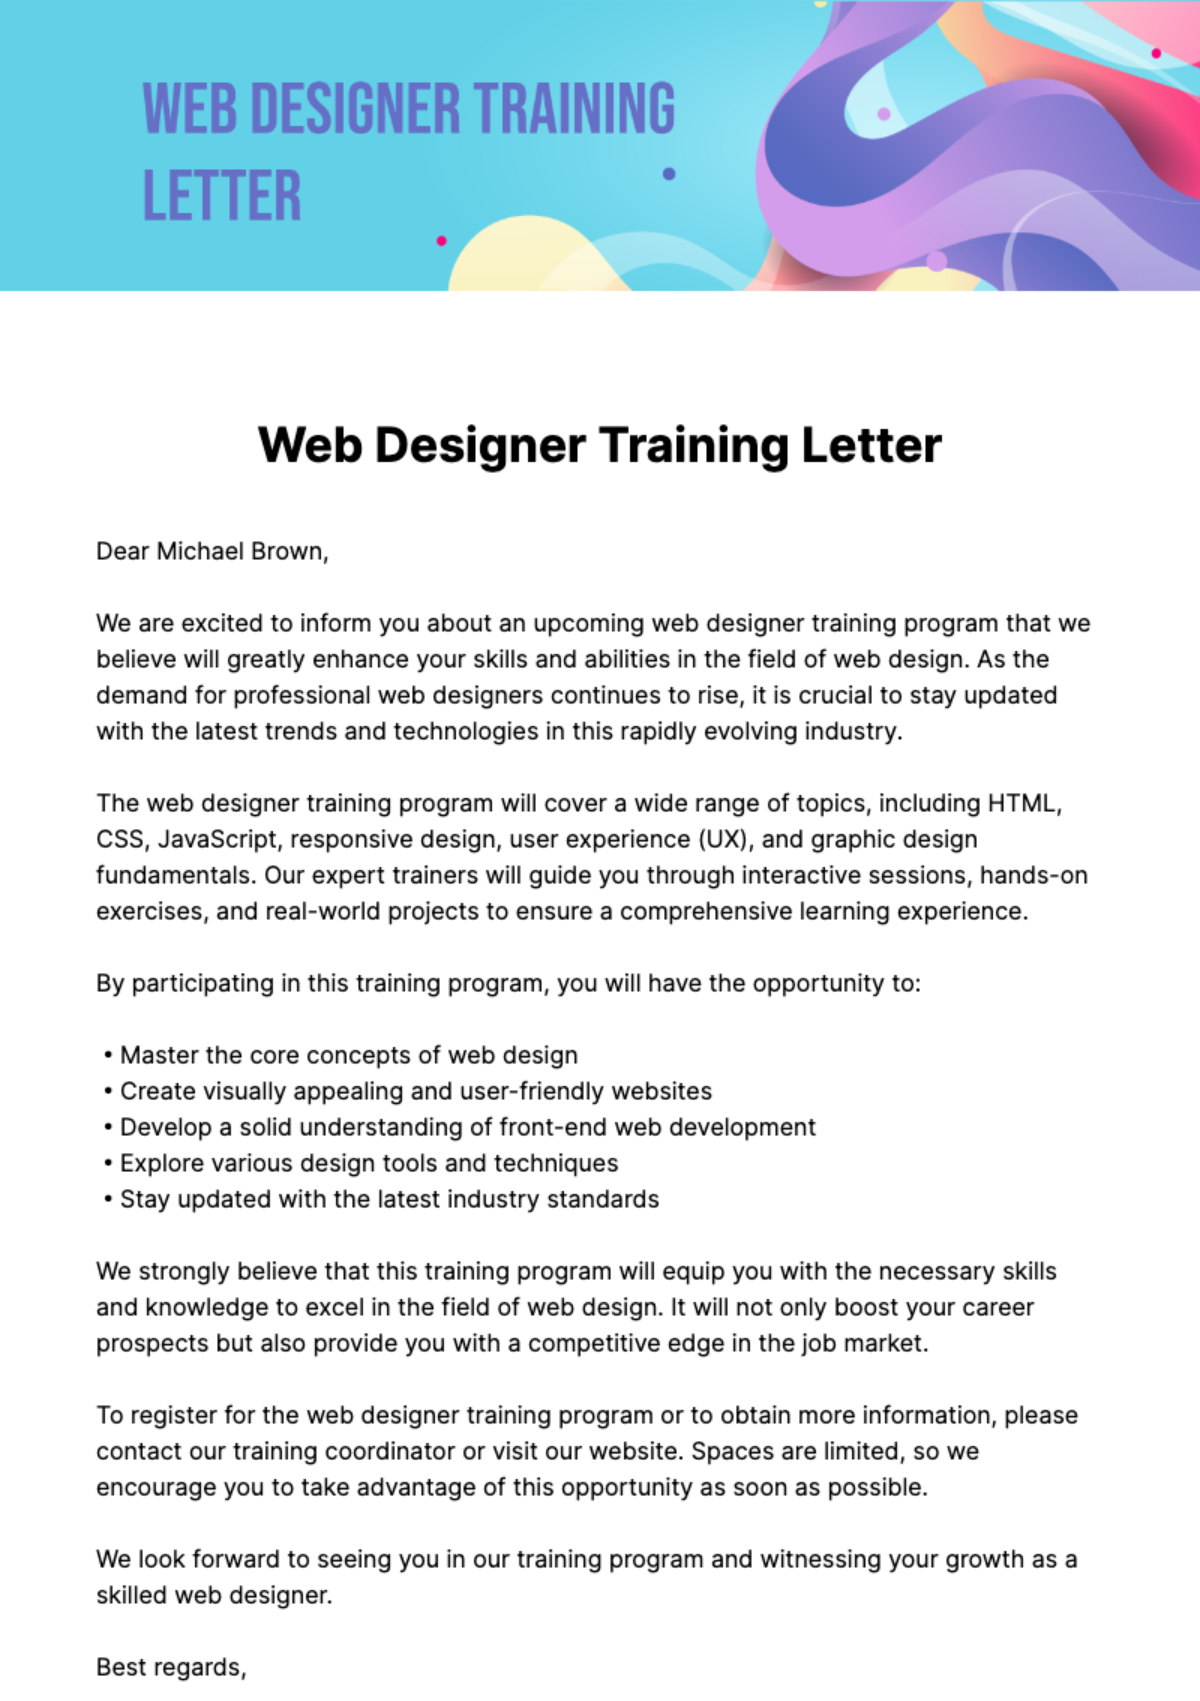 Web Designer Training Letter Template